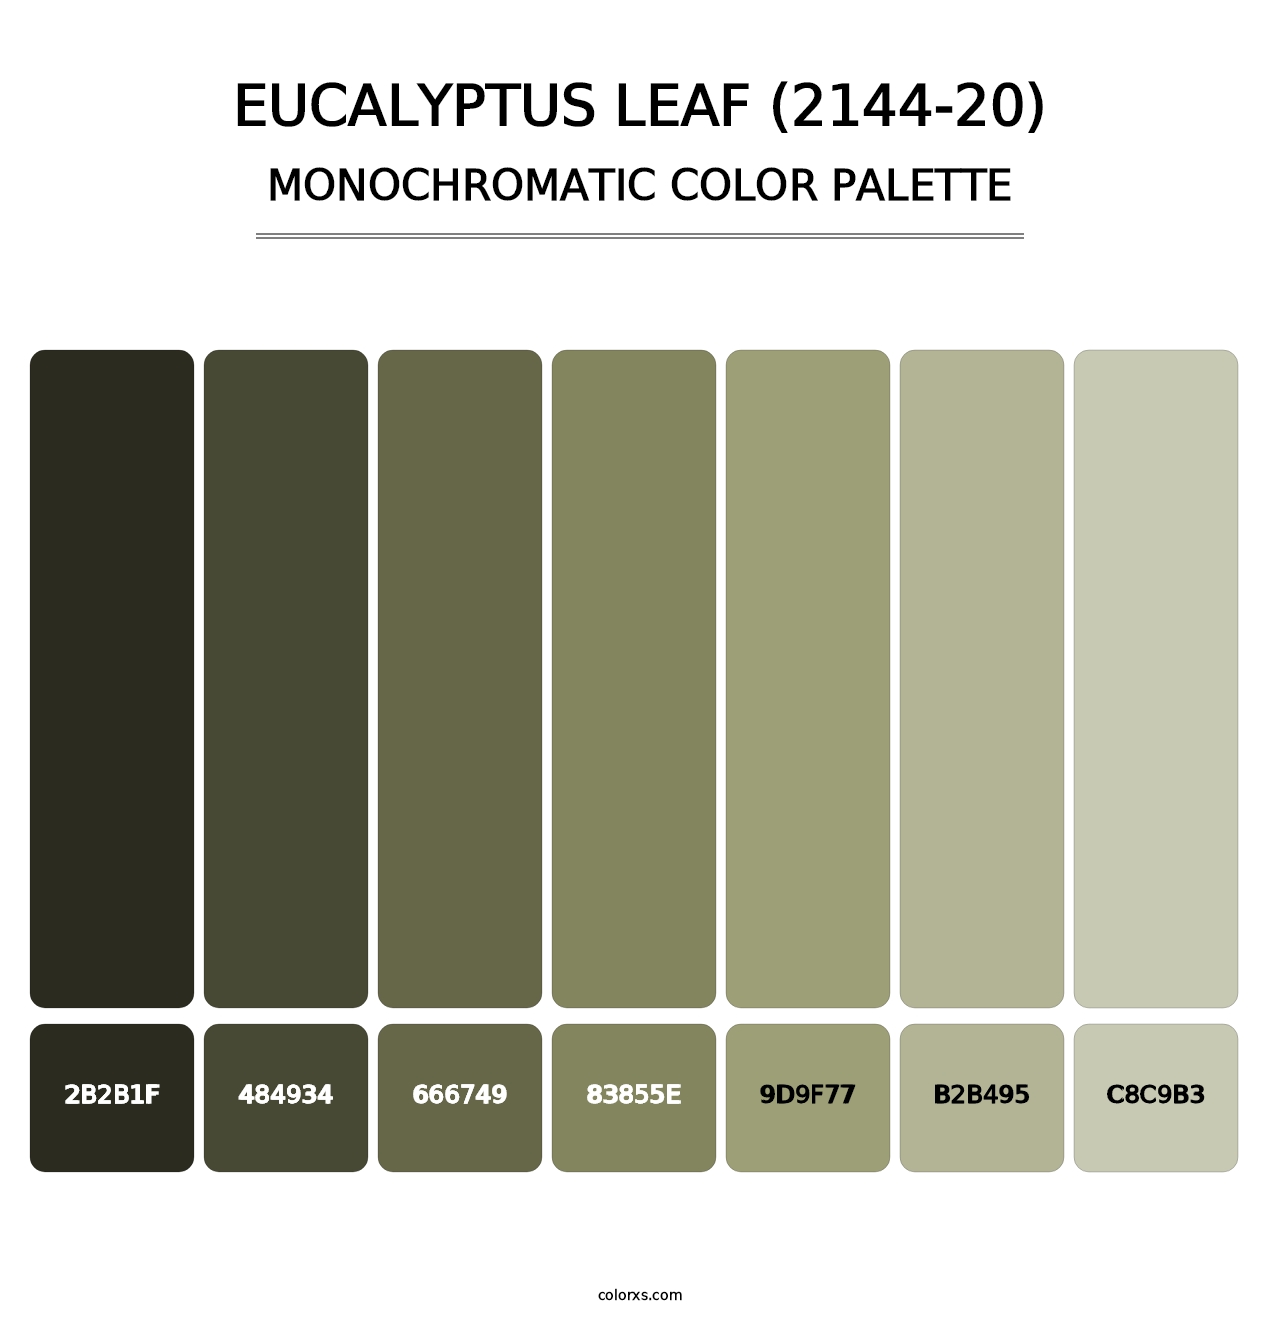 Eucalyptus Leaf (2144-20) - Monochromatic Color Palette